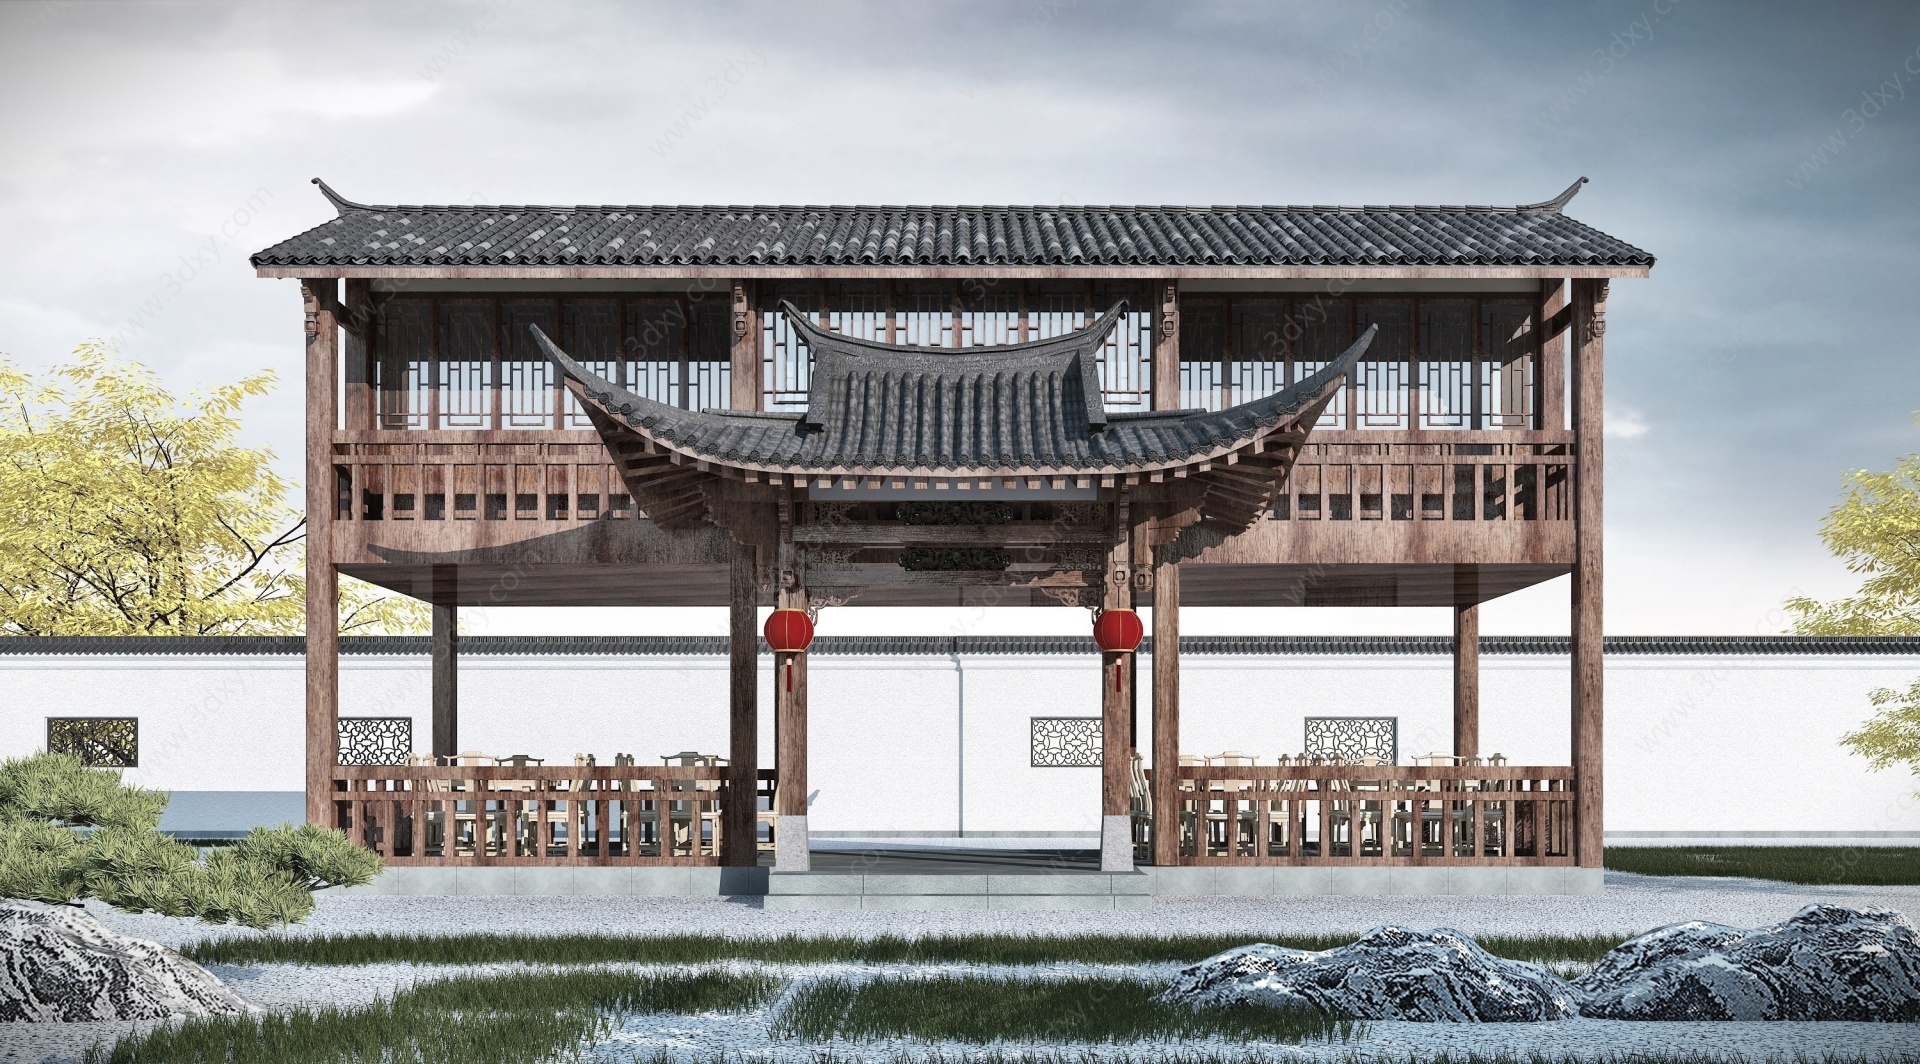 中式餐厅3D模型